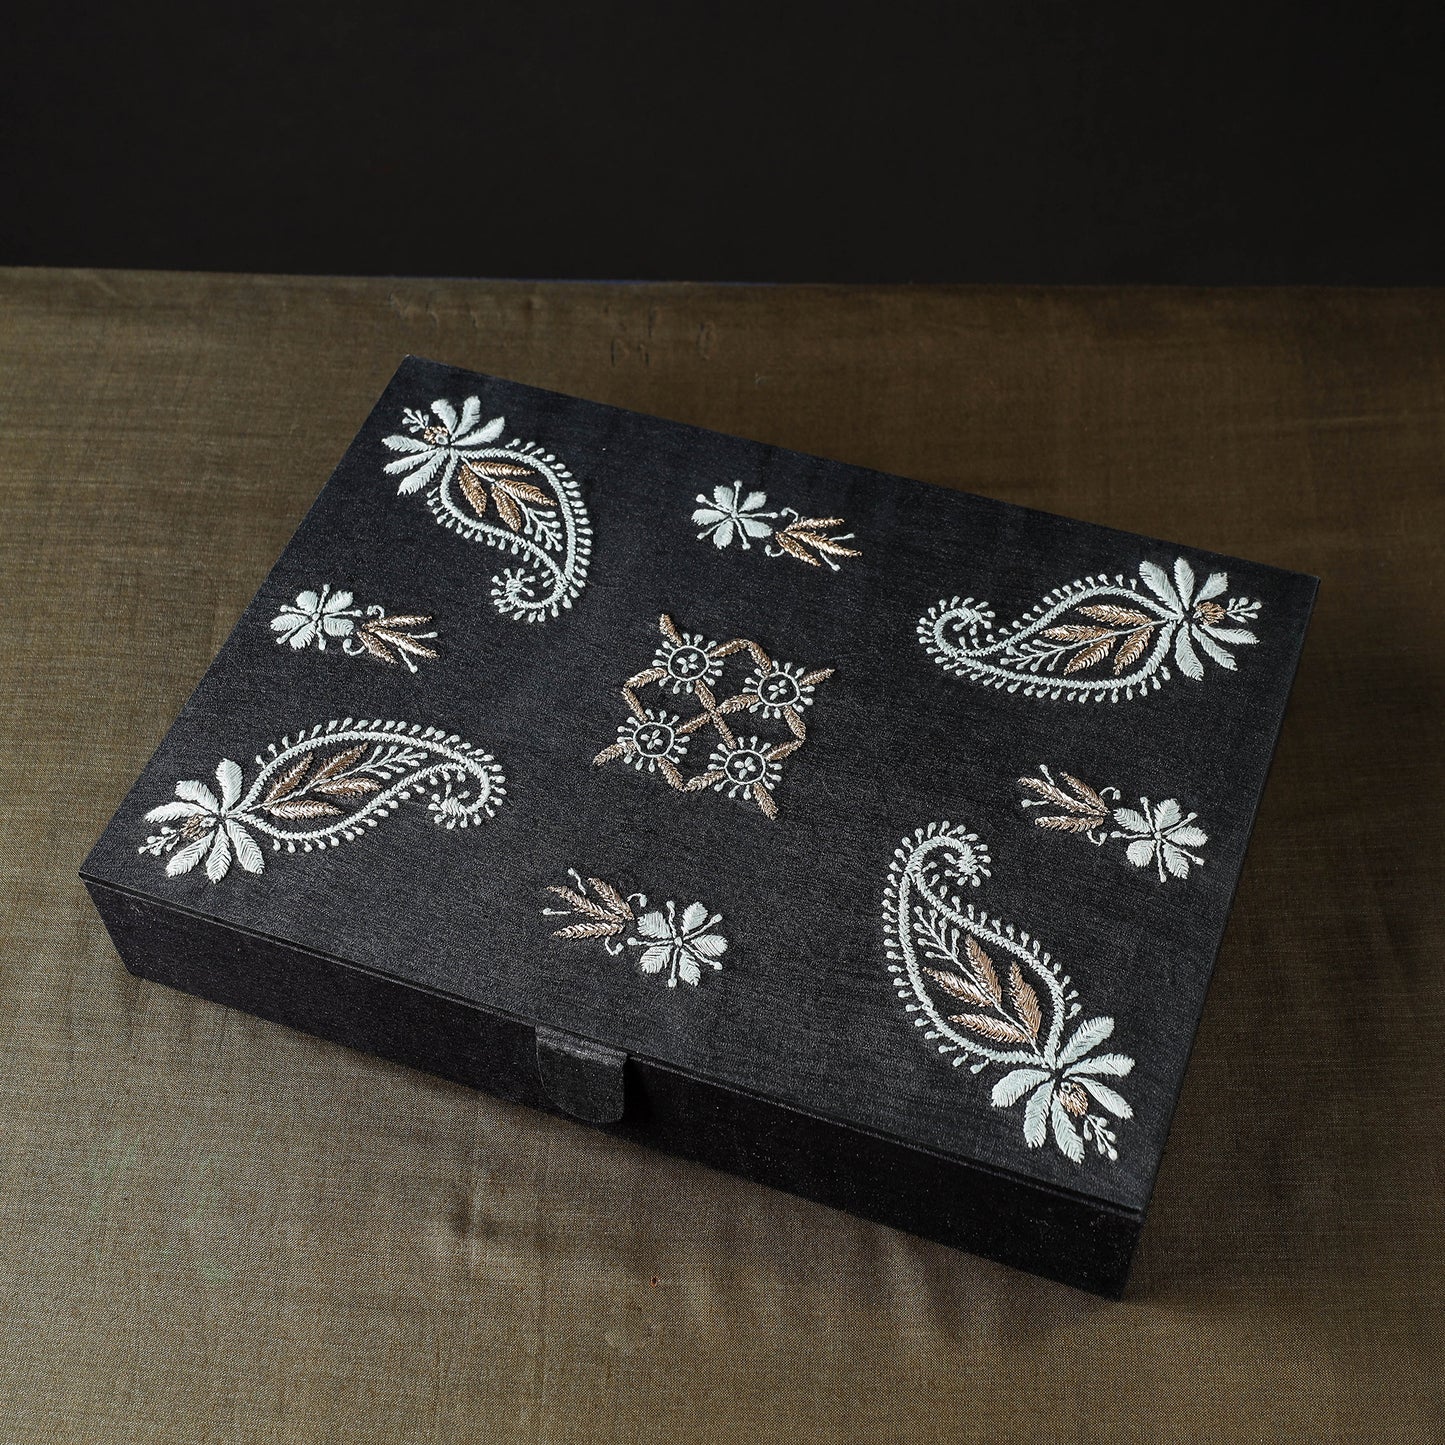 Chikankari Hand Embroidery Tussar Silk Jewelry Box (12 x 8 in)